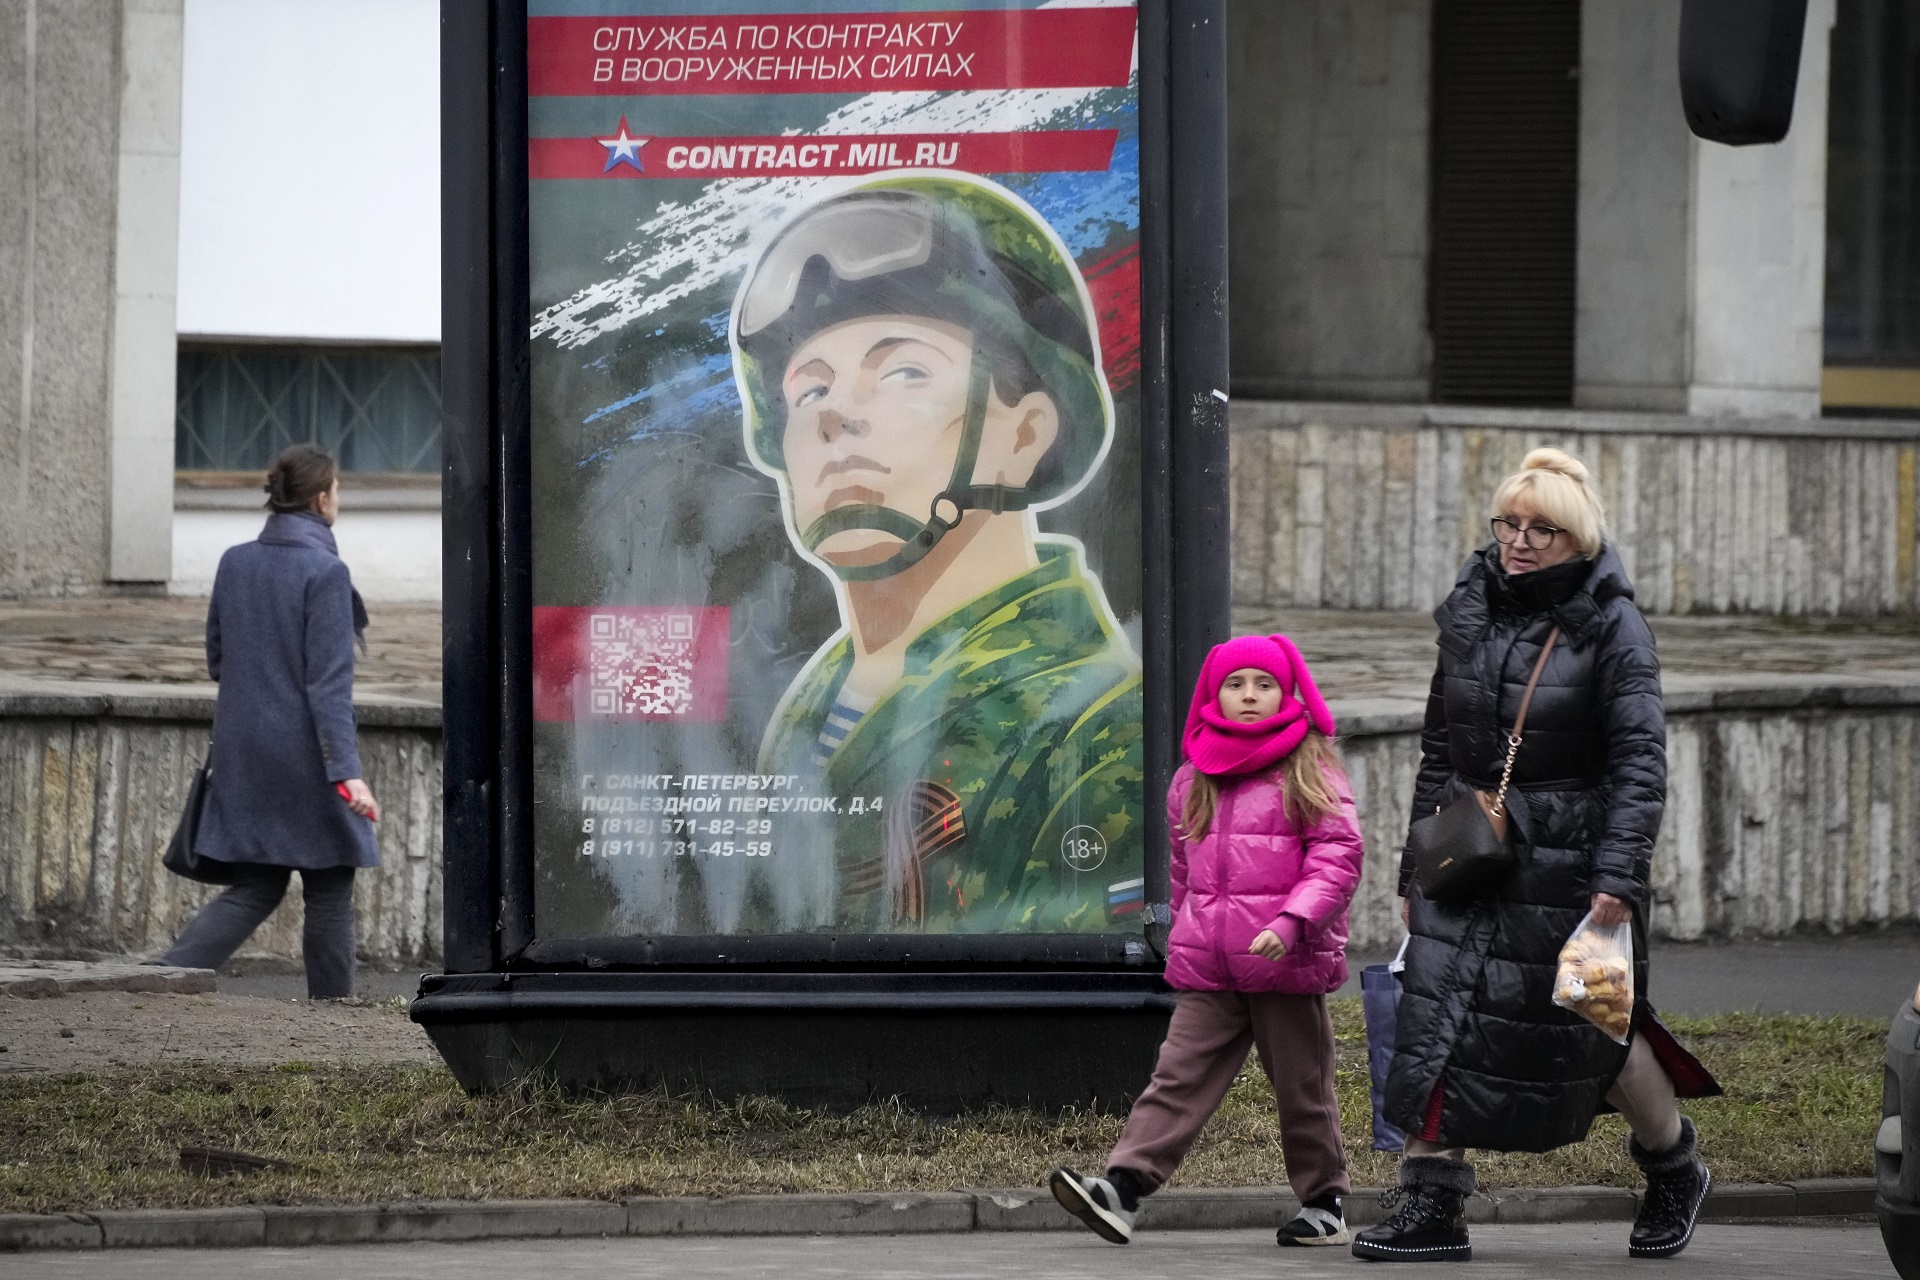 Cómo es la nueva campaña del Kremlin para reclutar combatientes: ofrecen primas en efectivo, beneficios familiares y promesas tentadores 